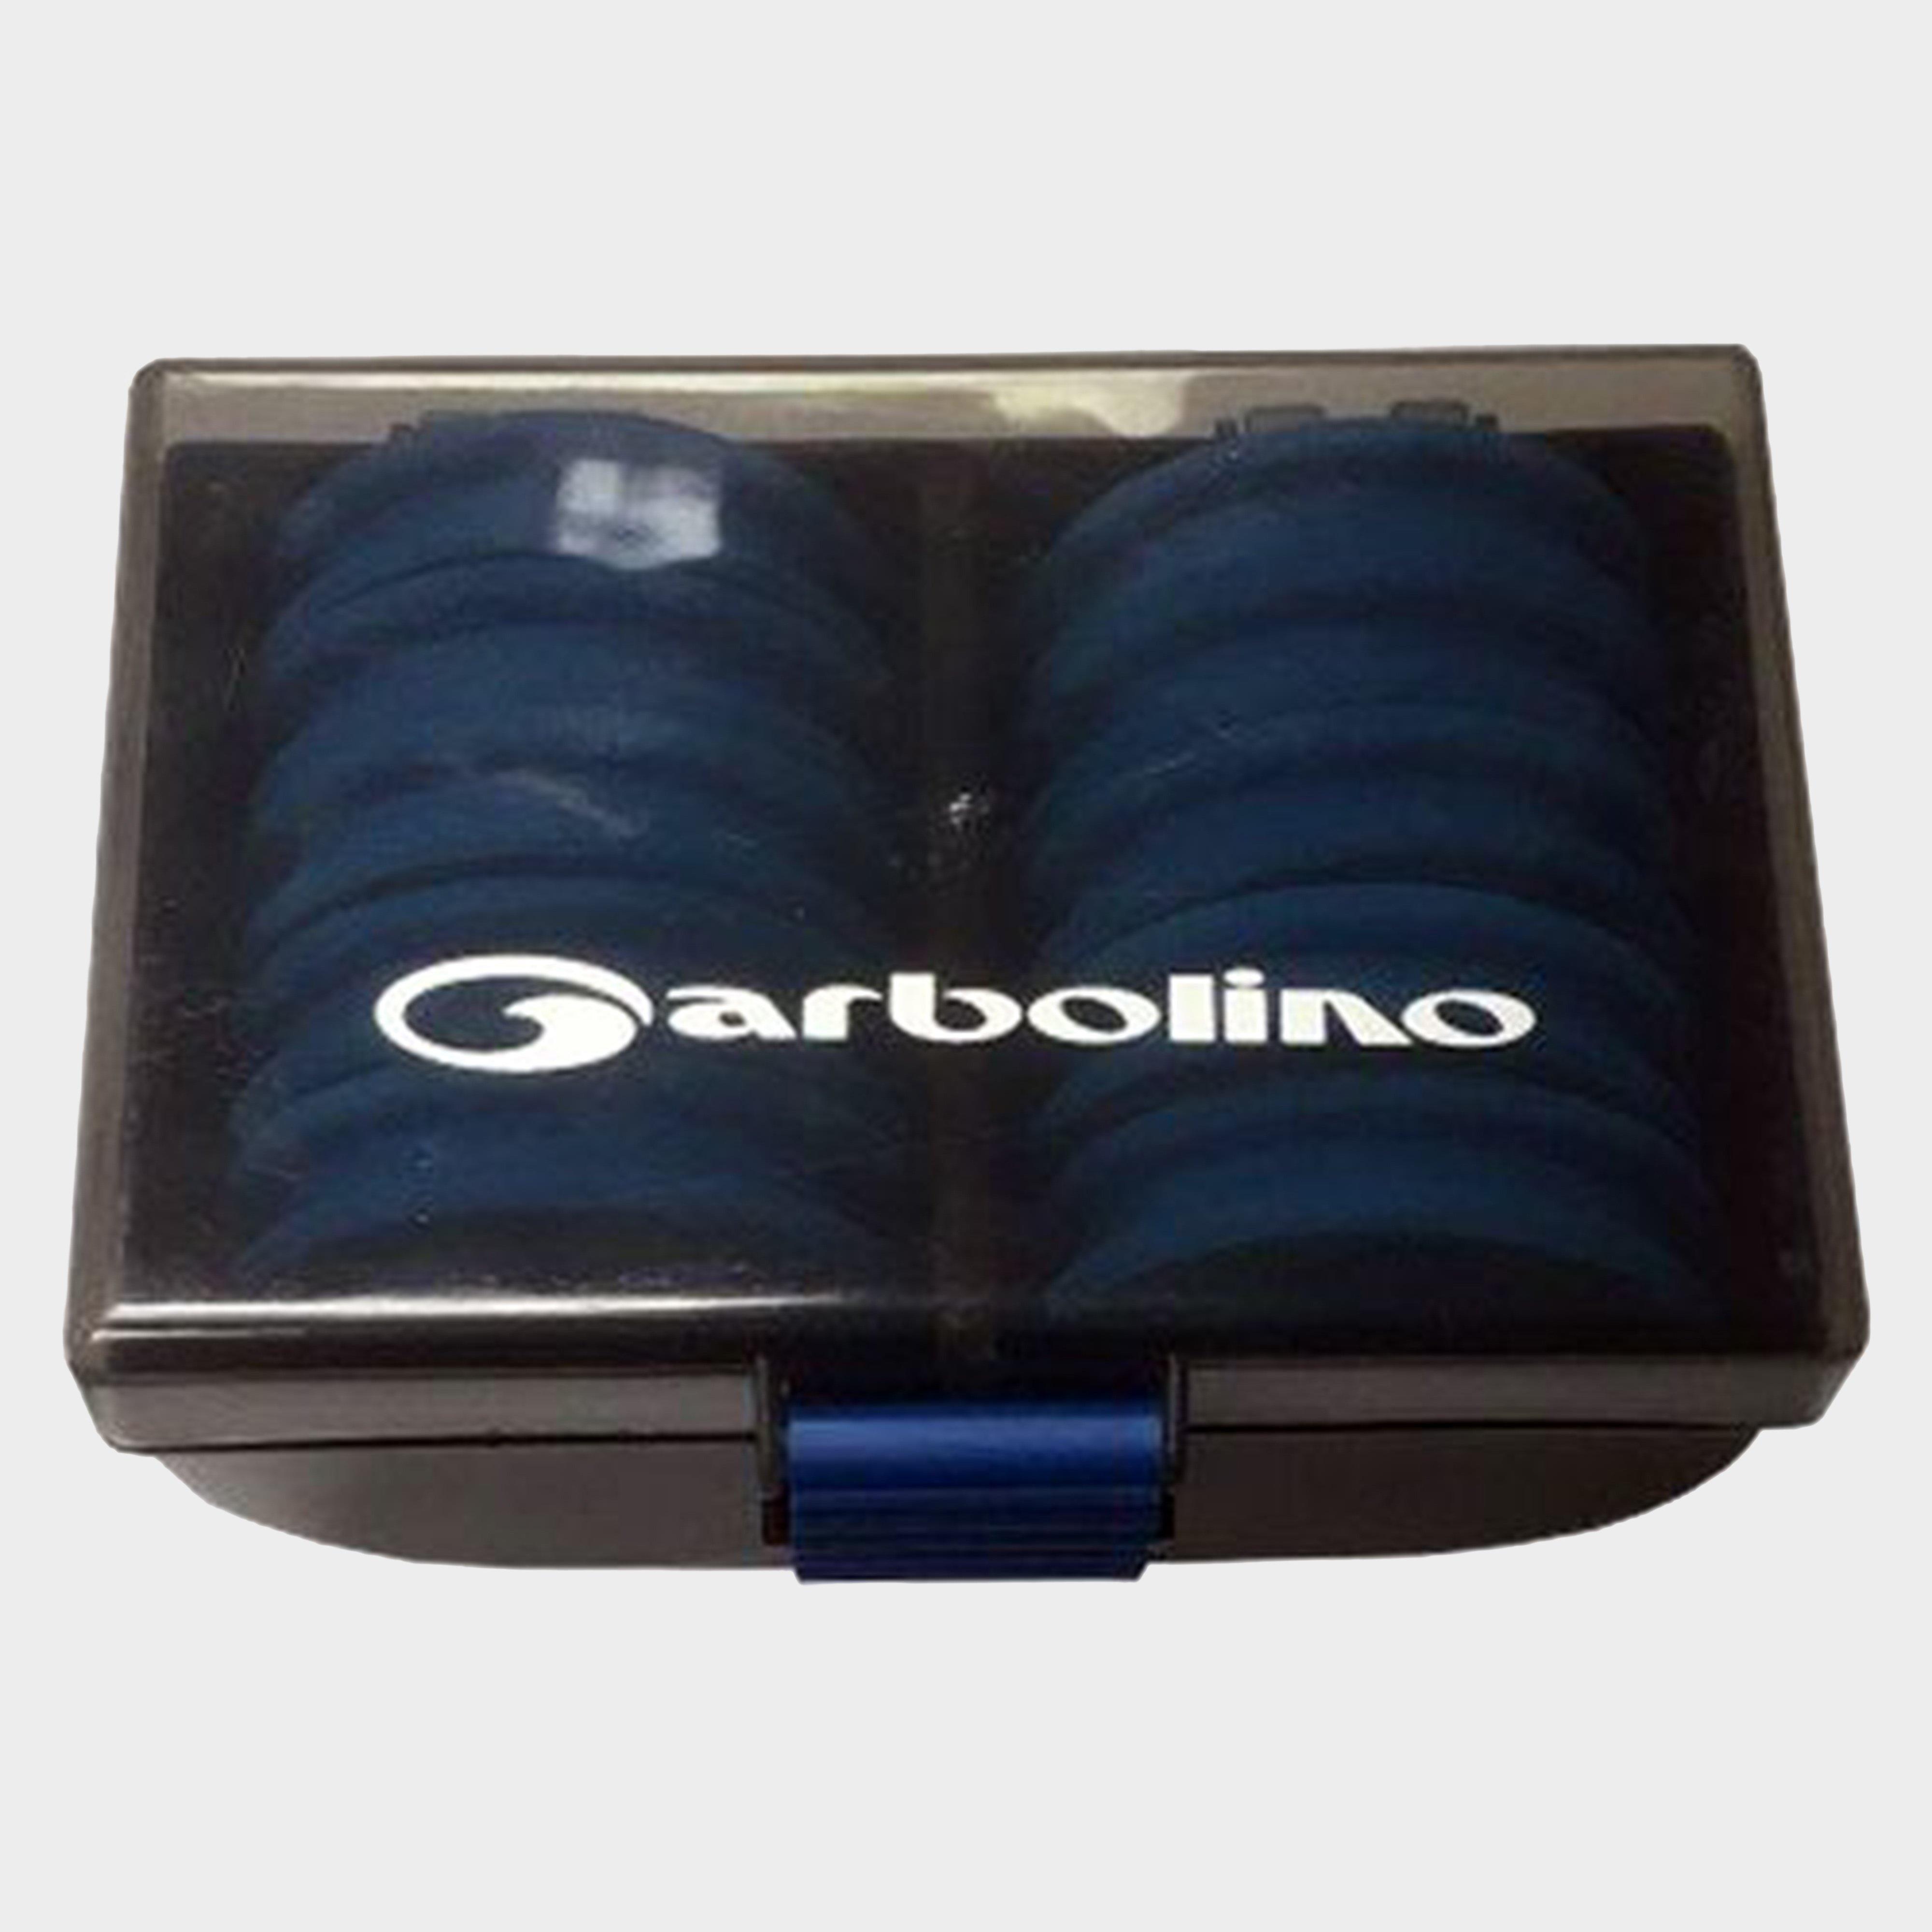 Garbolino Hooklength Box - Box/box  Box/box